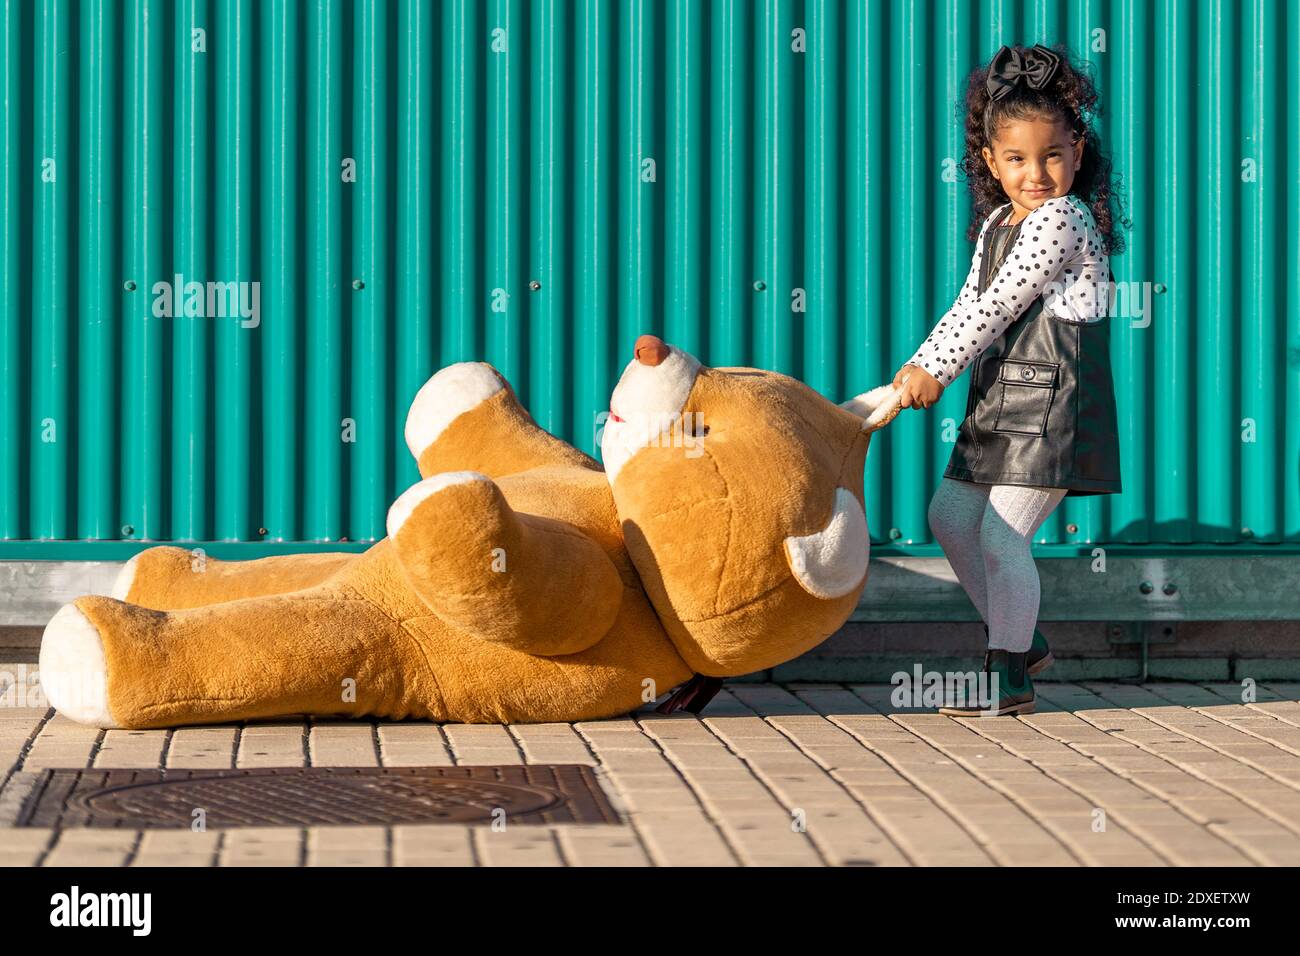 Une fille traînant un ours en peluche sur le sentier tout en se tenant contre le vert mur Banque D'Images